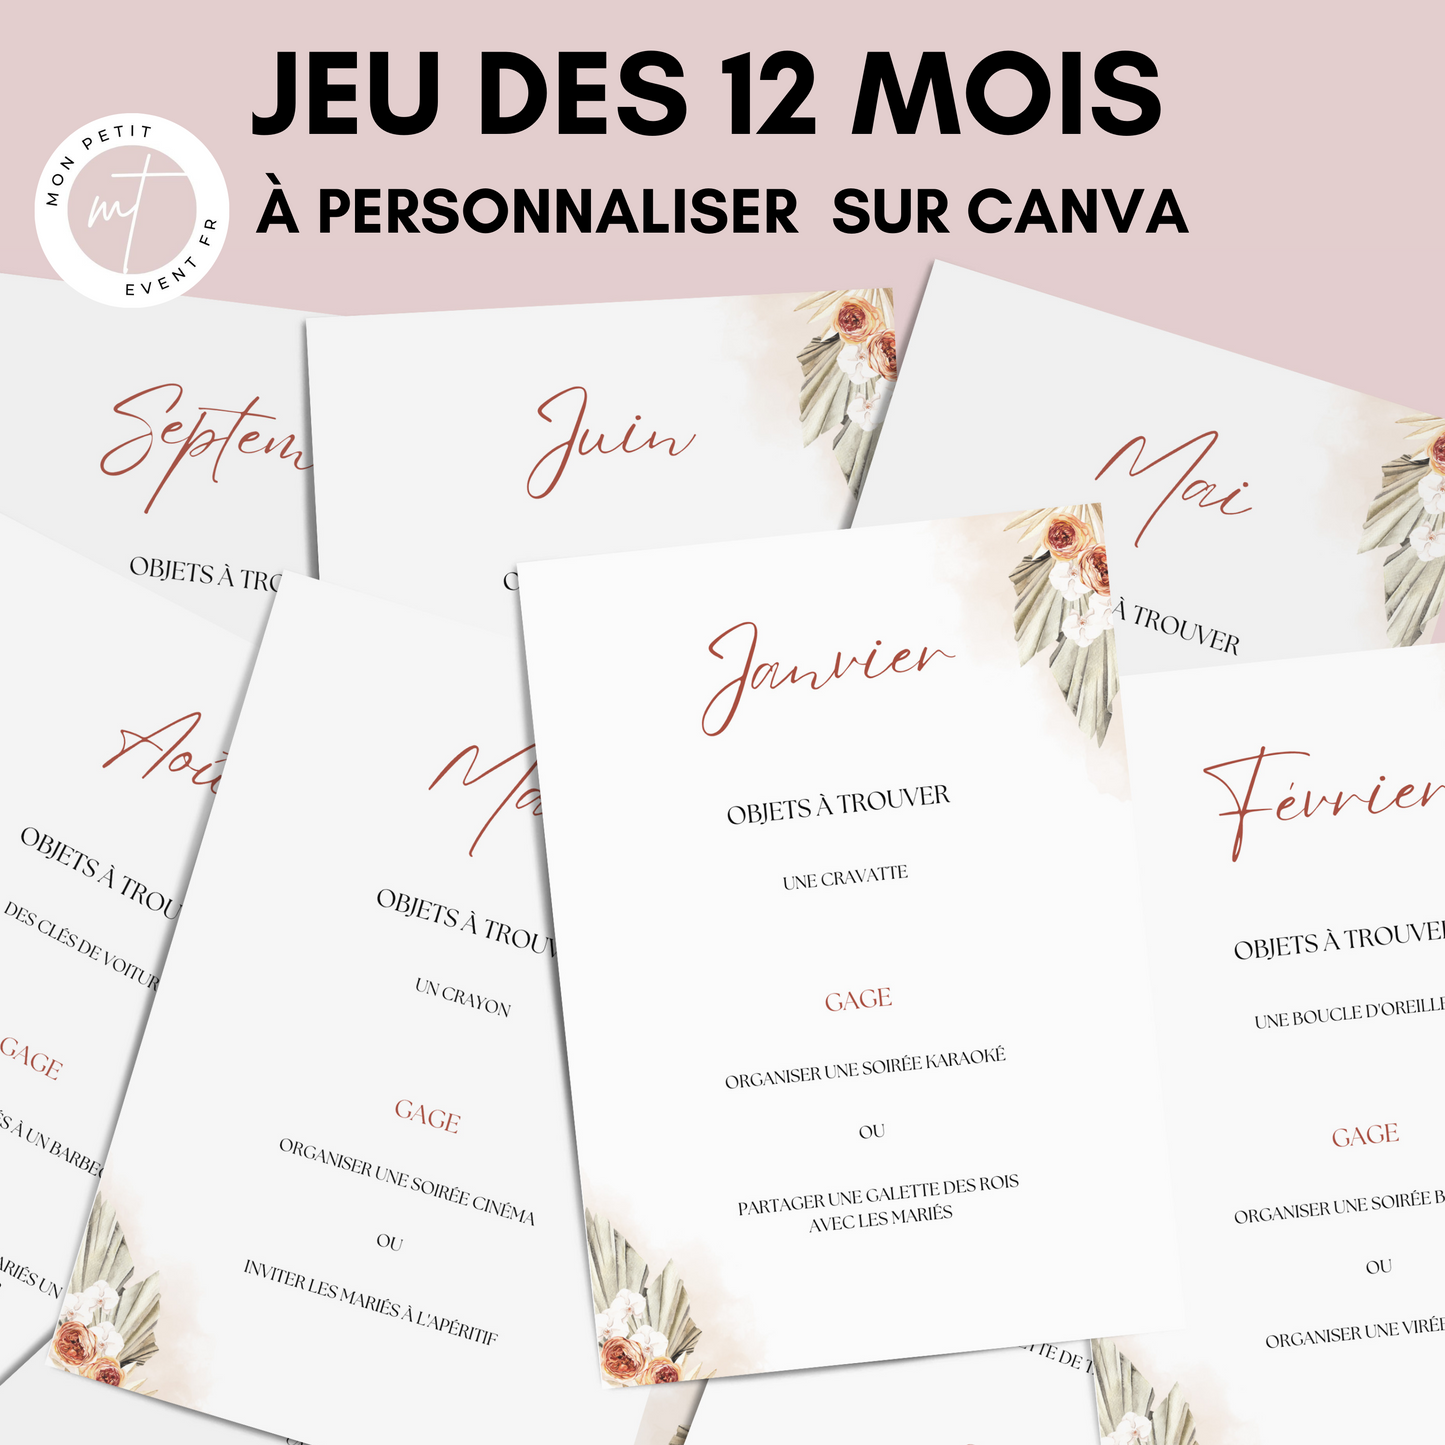 Jeu des 12 mois personnalisable - Activité idéale pour un mariage - Jeux mariage Français -  Animations de table mariage